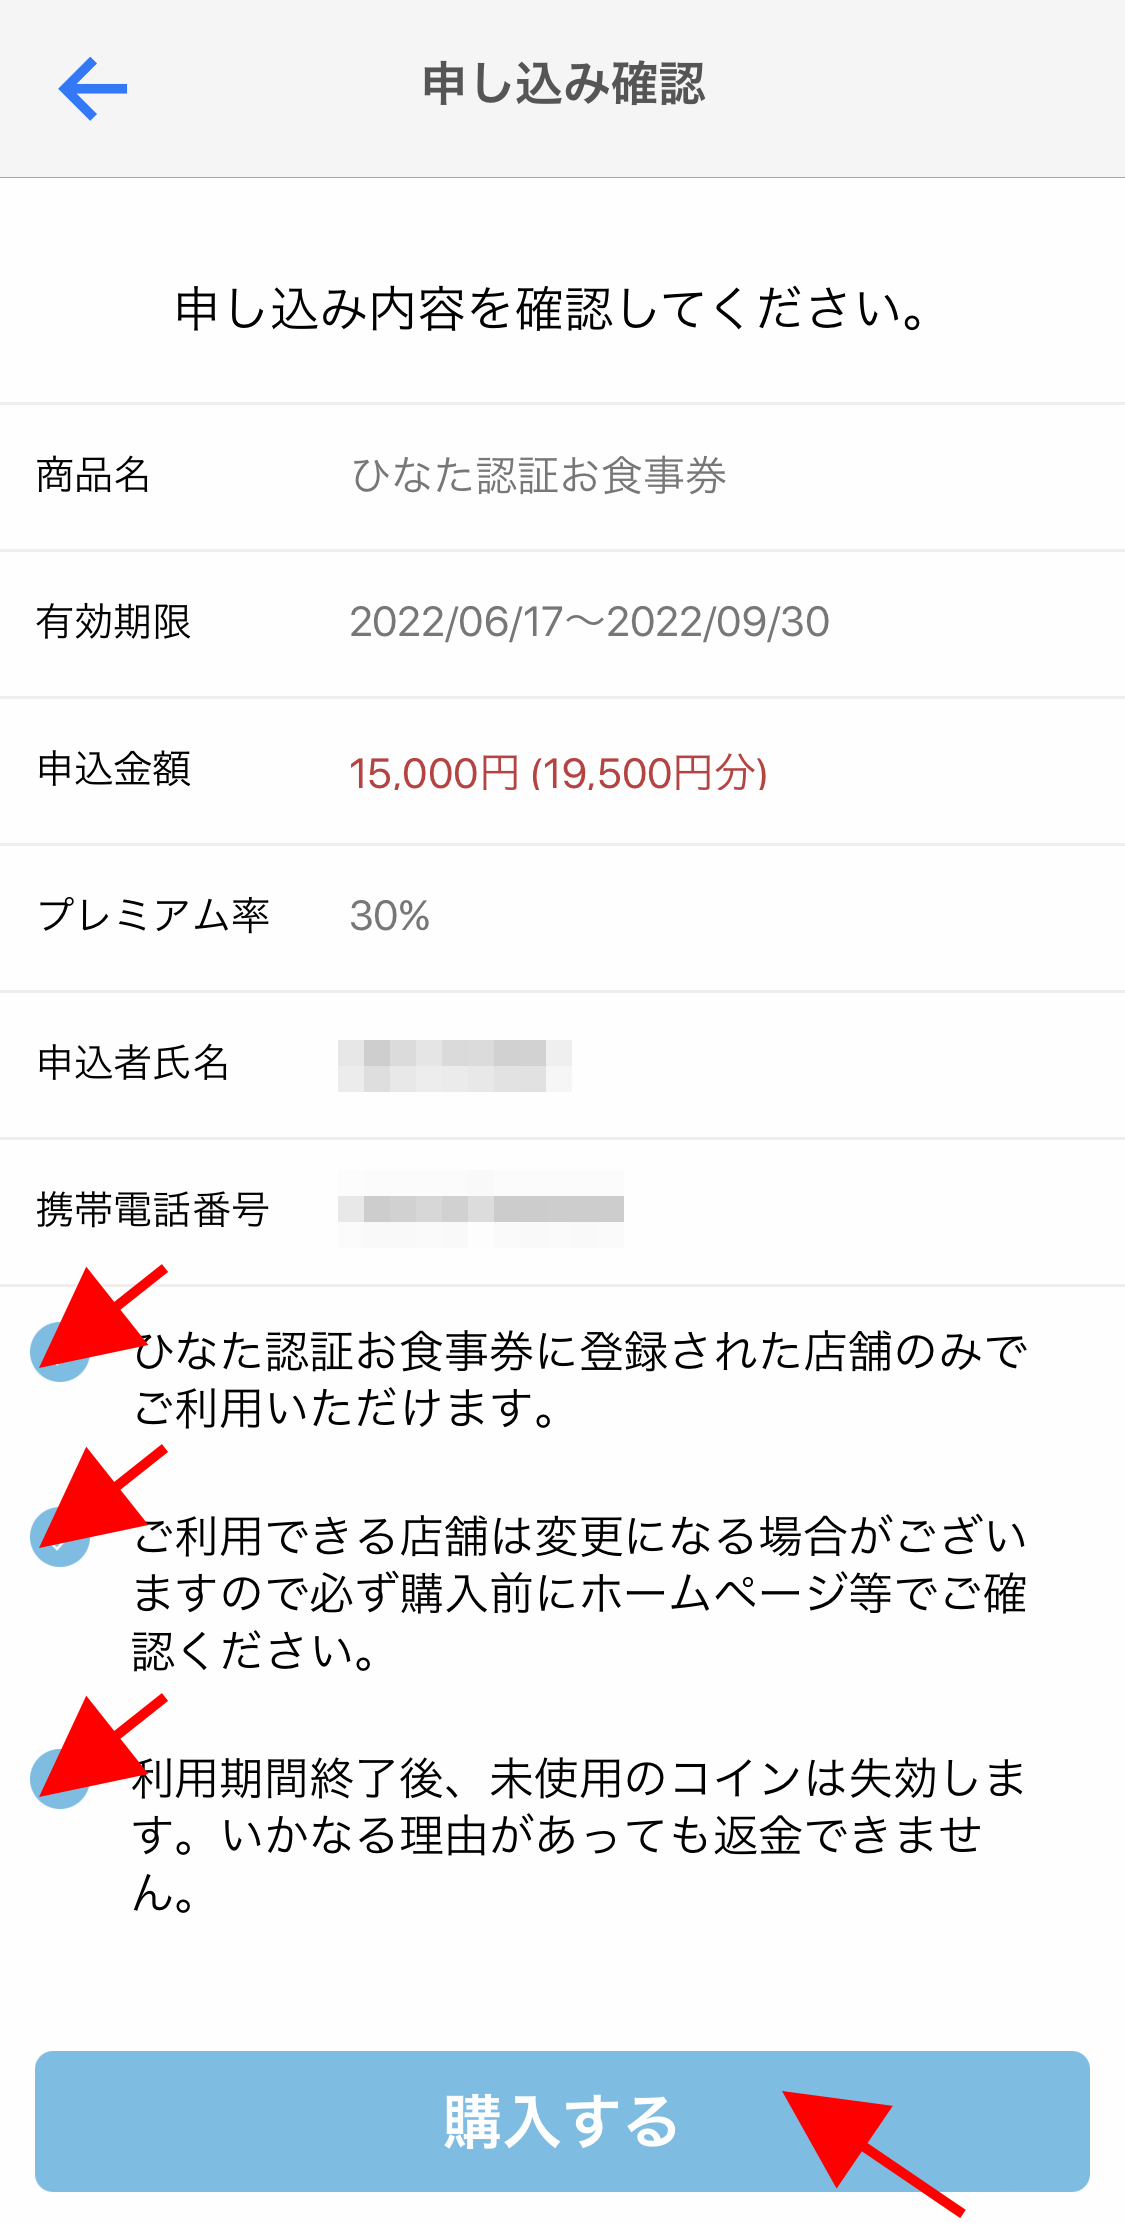 宮崎プレミアム付き電子食事券が6月13日から発売【購入から利用までの流れ】